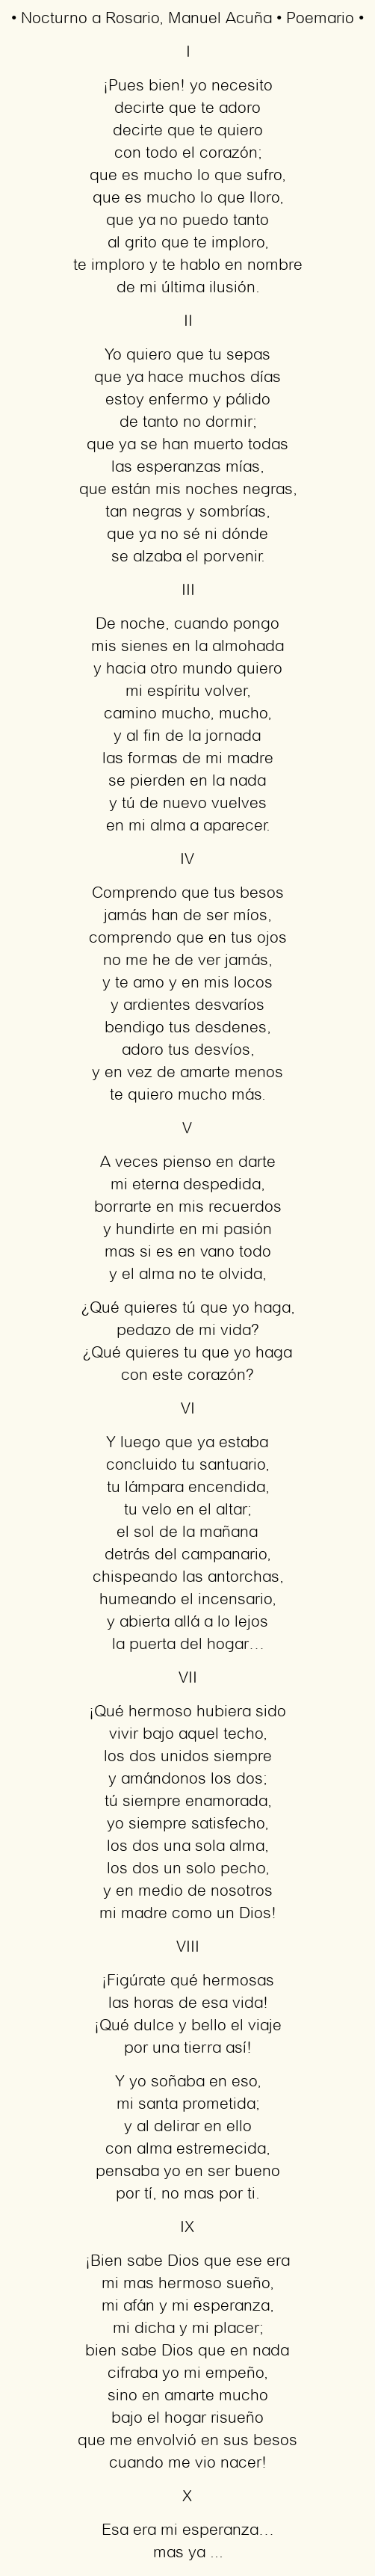 Análisis del poema A Rosario de Manuel Acuña: Descubriendo la pasión y melancolía en versos.